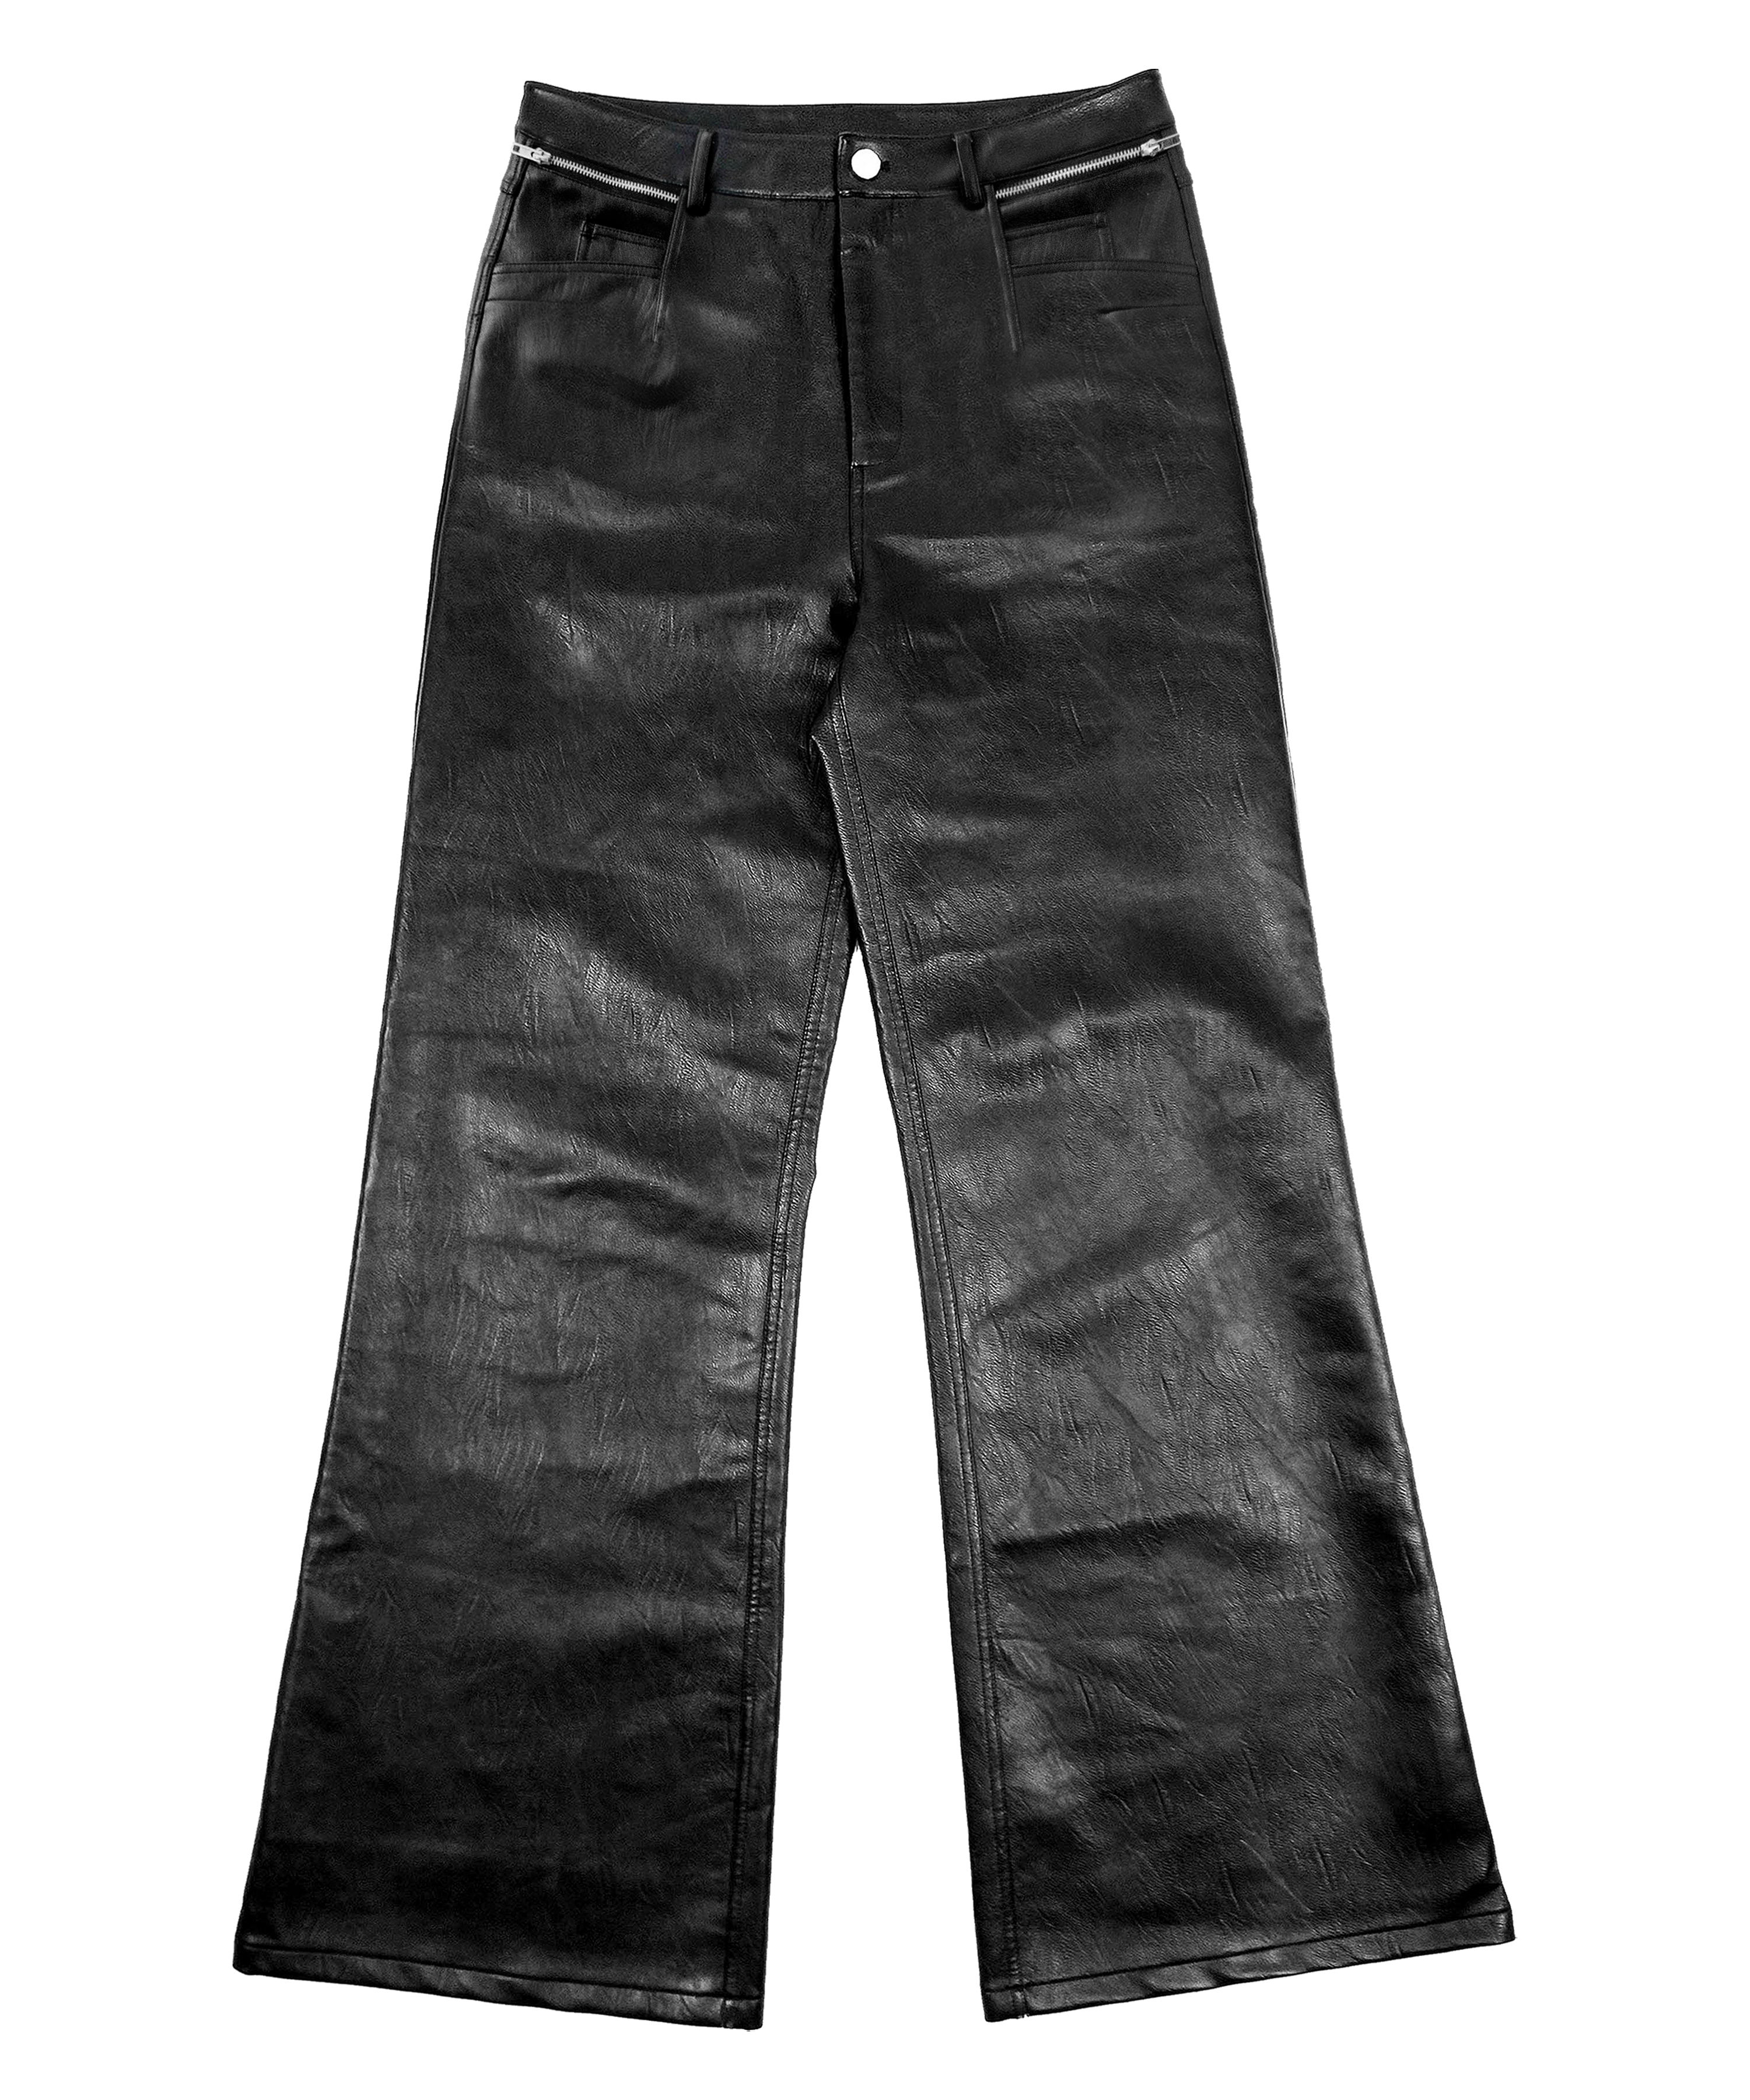 V2 black flared leather pants